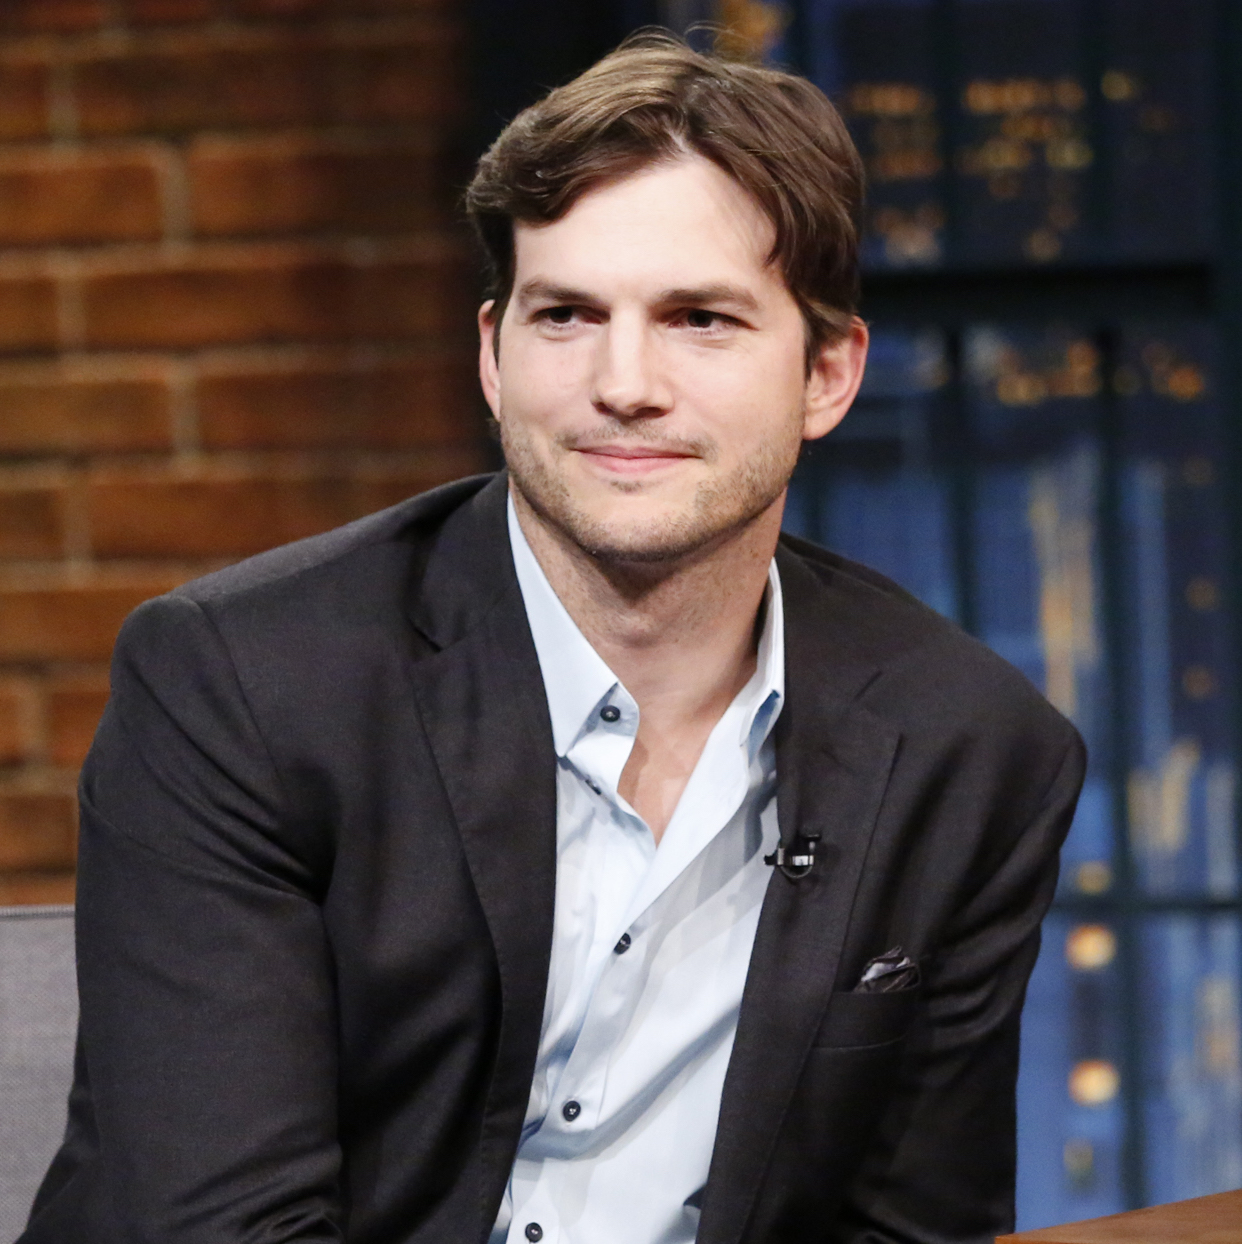 Ashton Kutcher – là một diễn viên, nhà sản xuất, người mẫu thời trang, diễn viên hài Mỹ nổi tiếng với vai ngoài ra anh còn tham gia vào các vai diễn trong các bộ phim Hollywood – sinh vào tháng Hai.